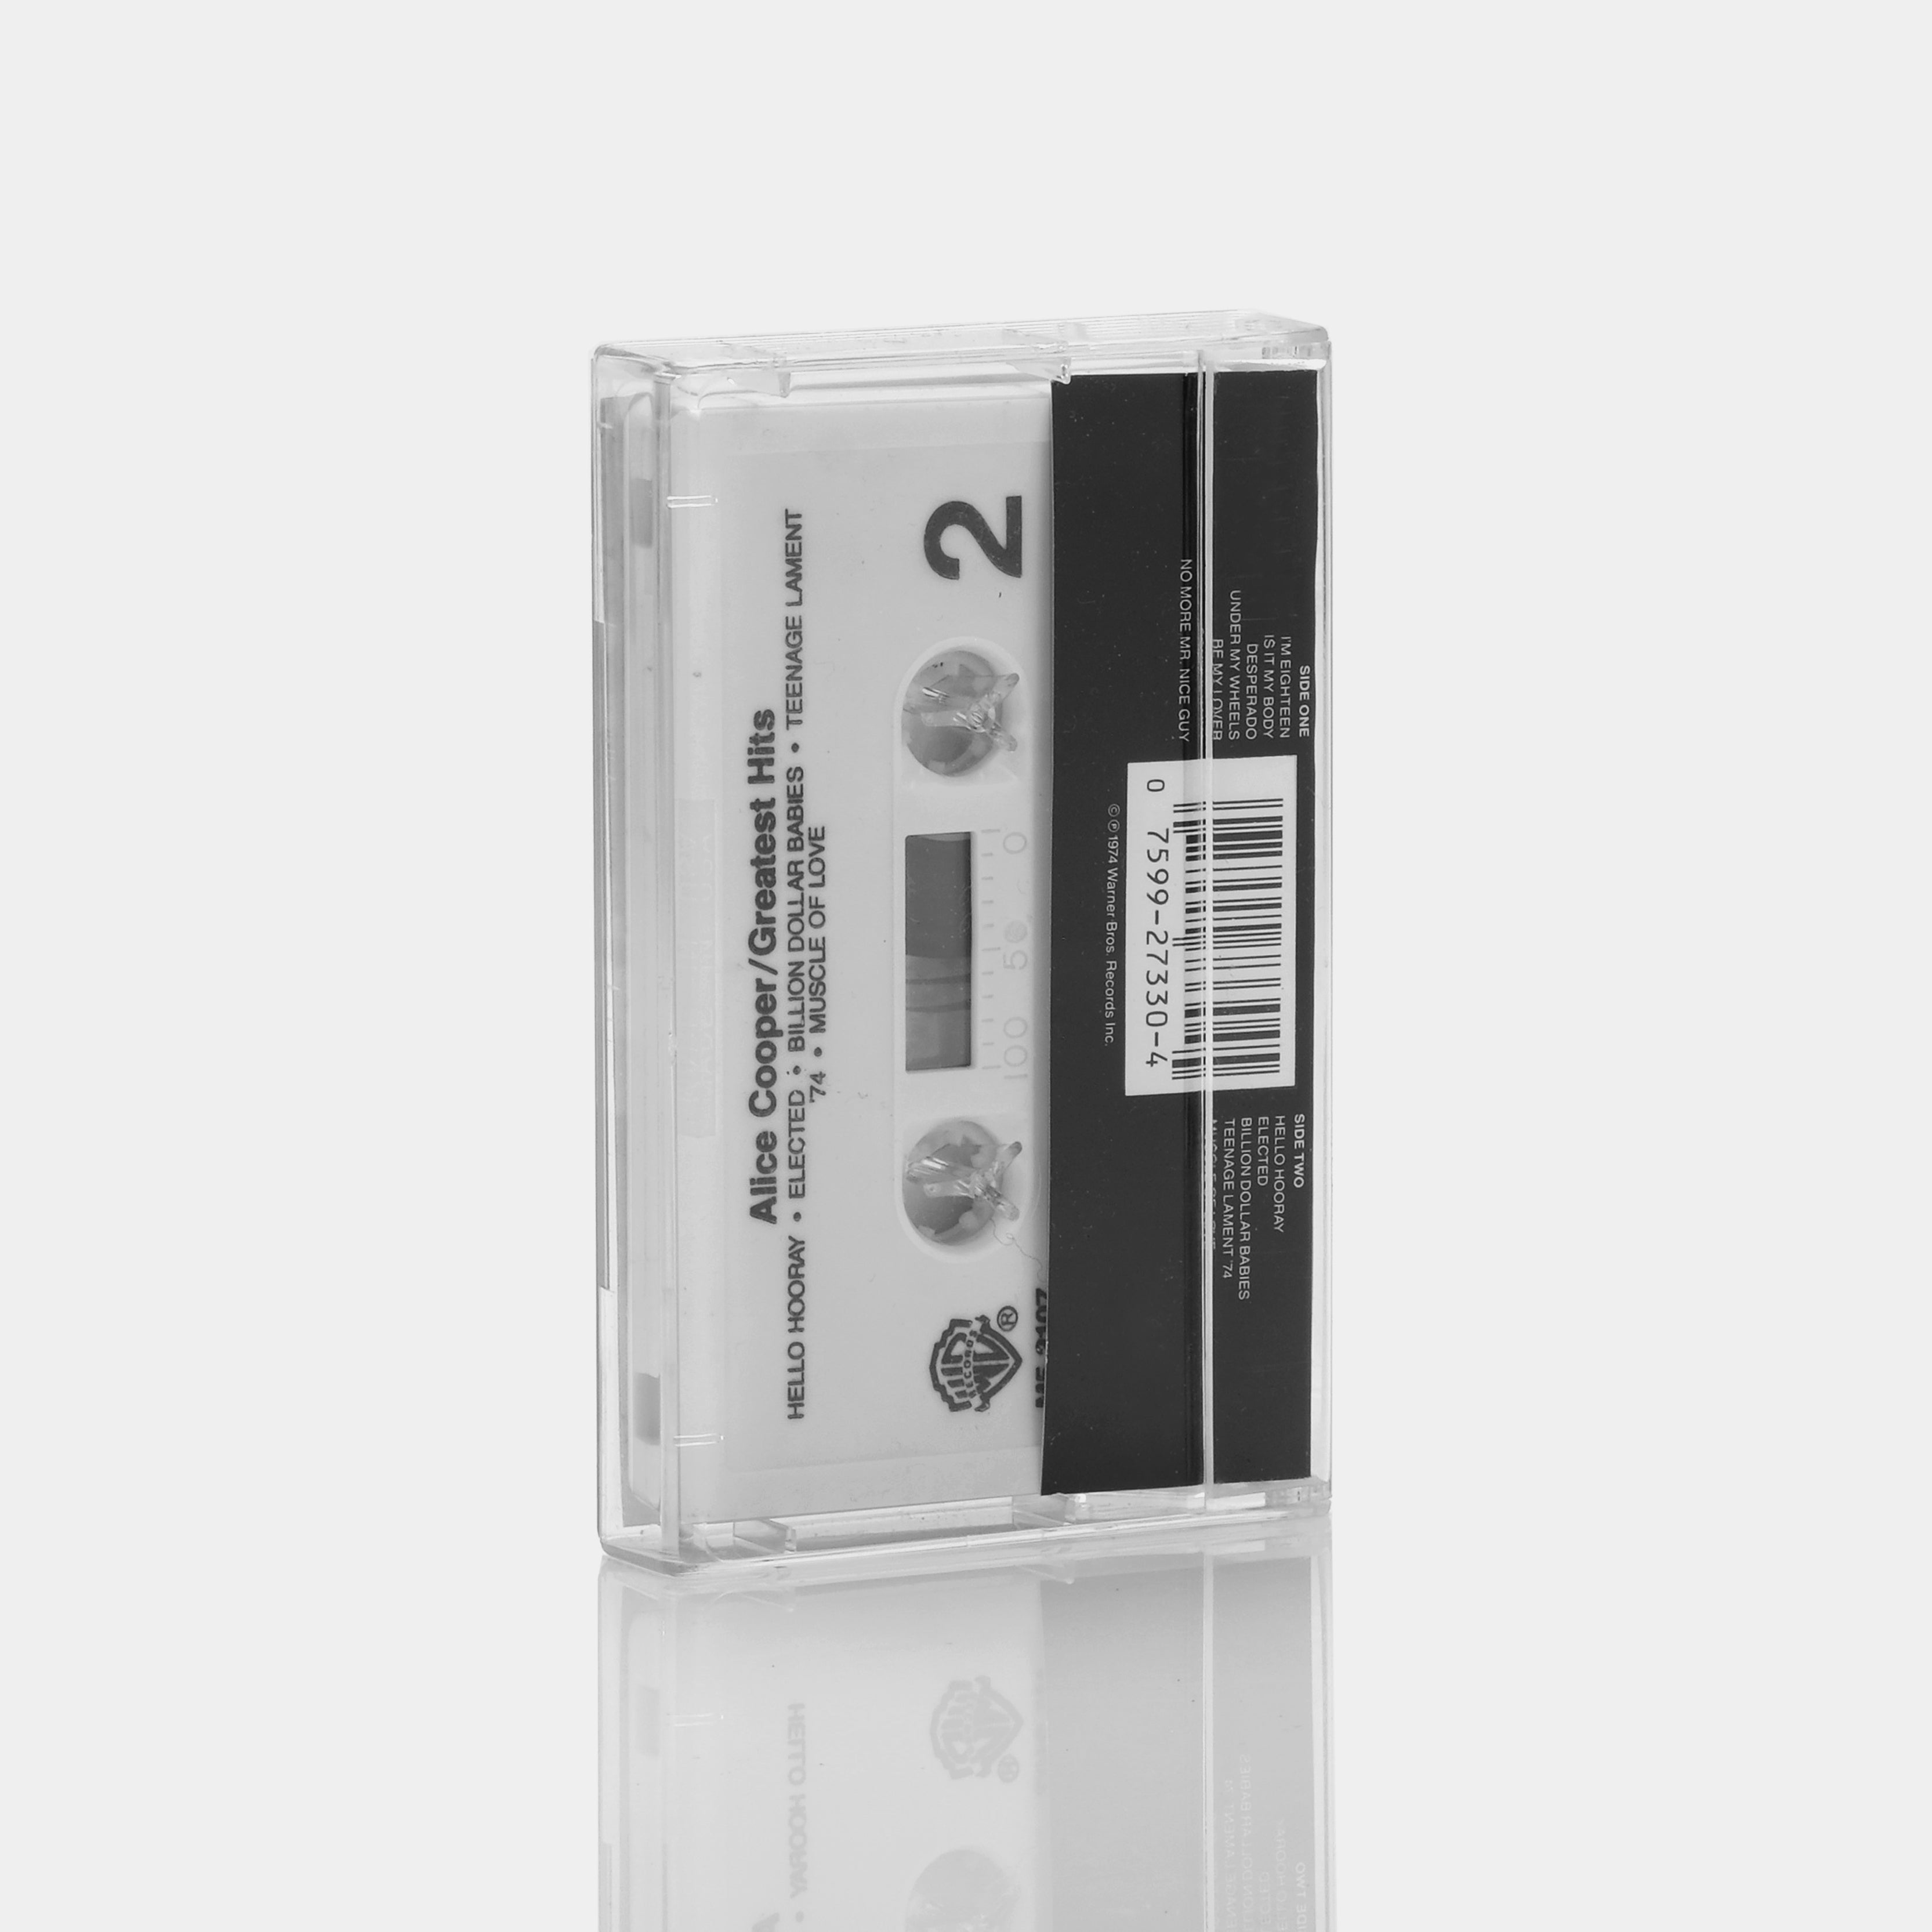 Alice Cooper - Alice Cooper's Greatest Hits Cassette Tape